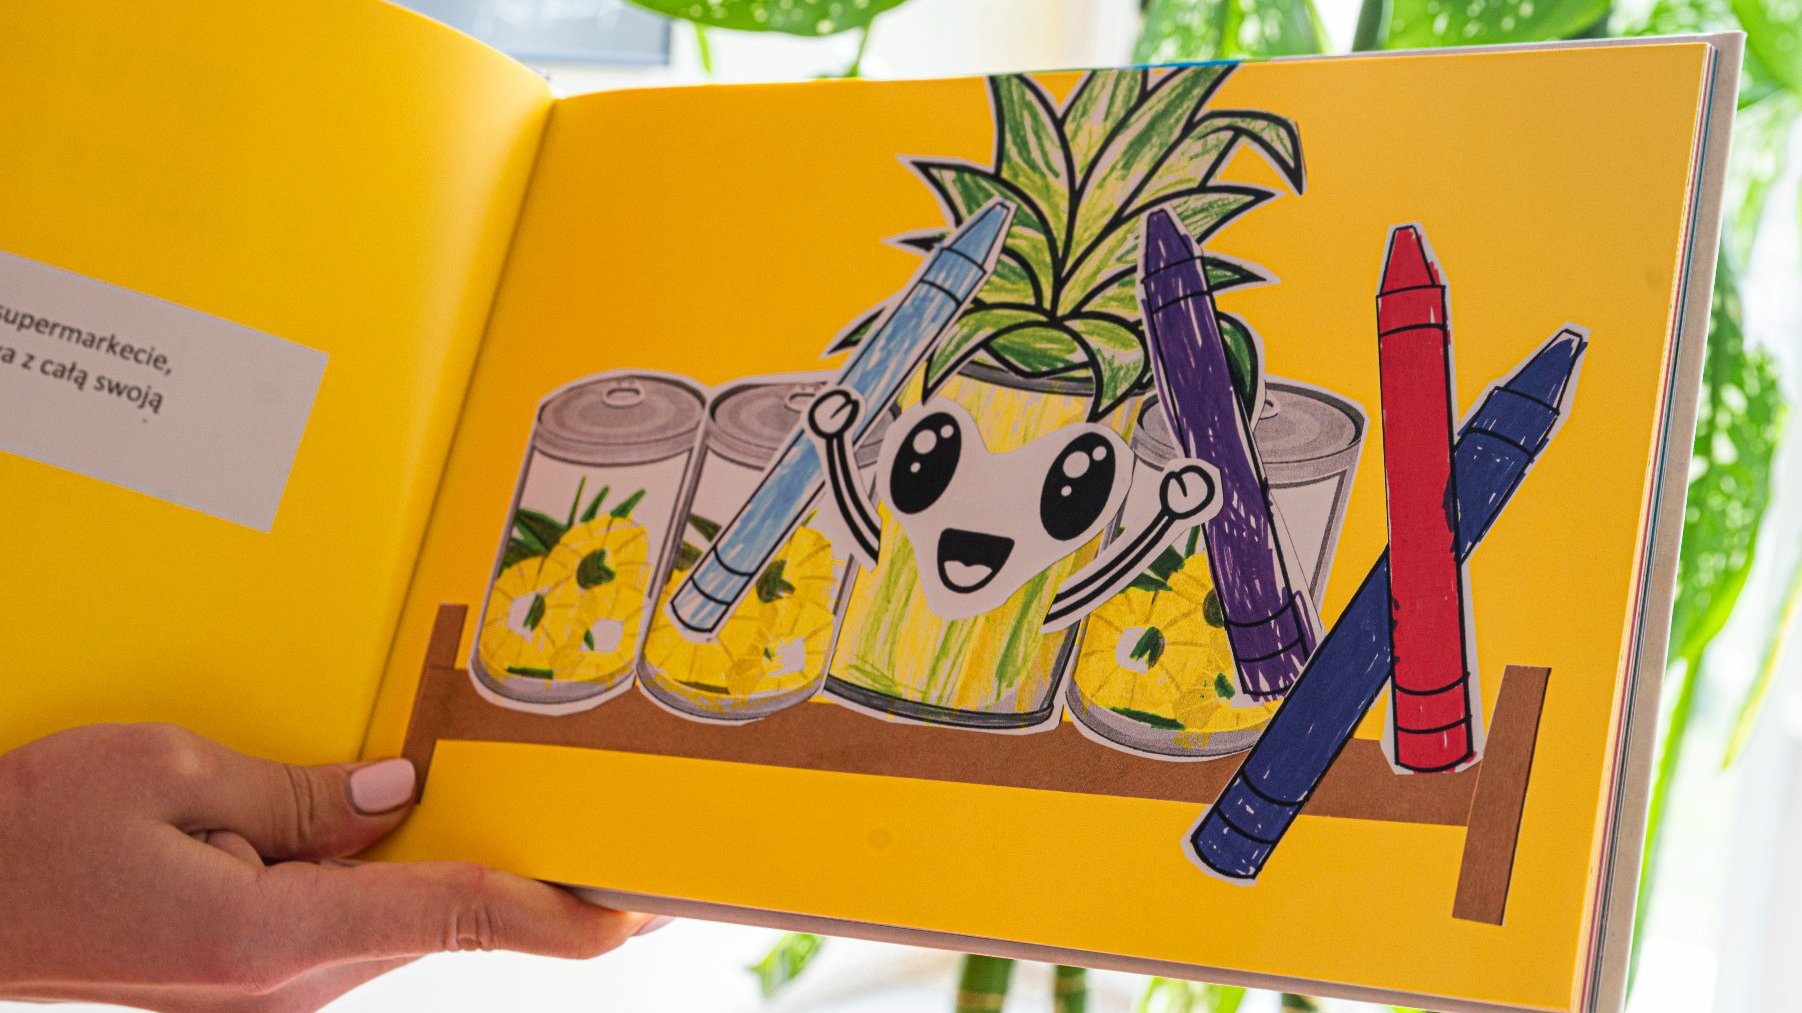 Na zdjęciu wnętrze książeczki - na żółtym tle narysowane są puszki ananasa oraz kredki